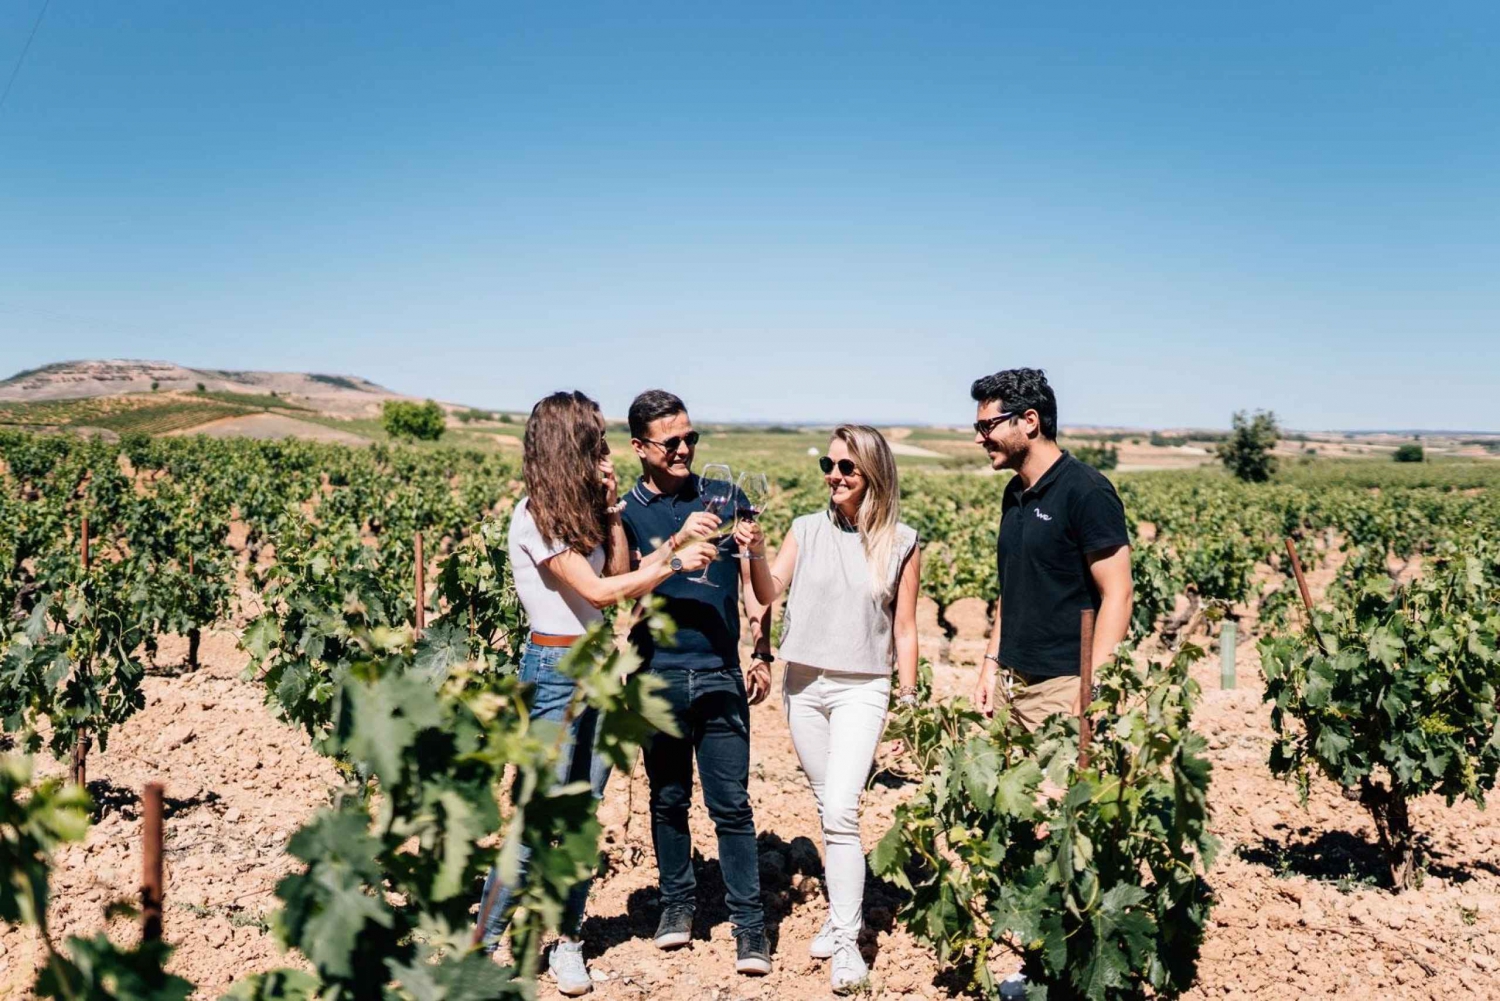 Vanuit Madrid: Ribera del Duero wijnmakerij en Segovia tour